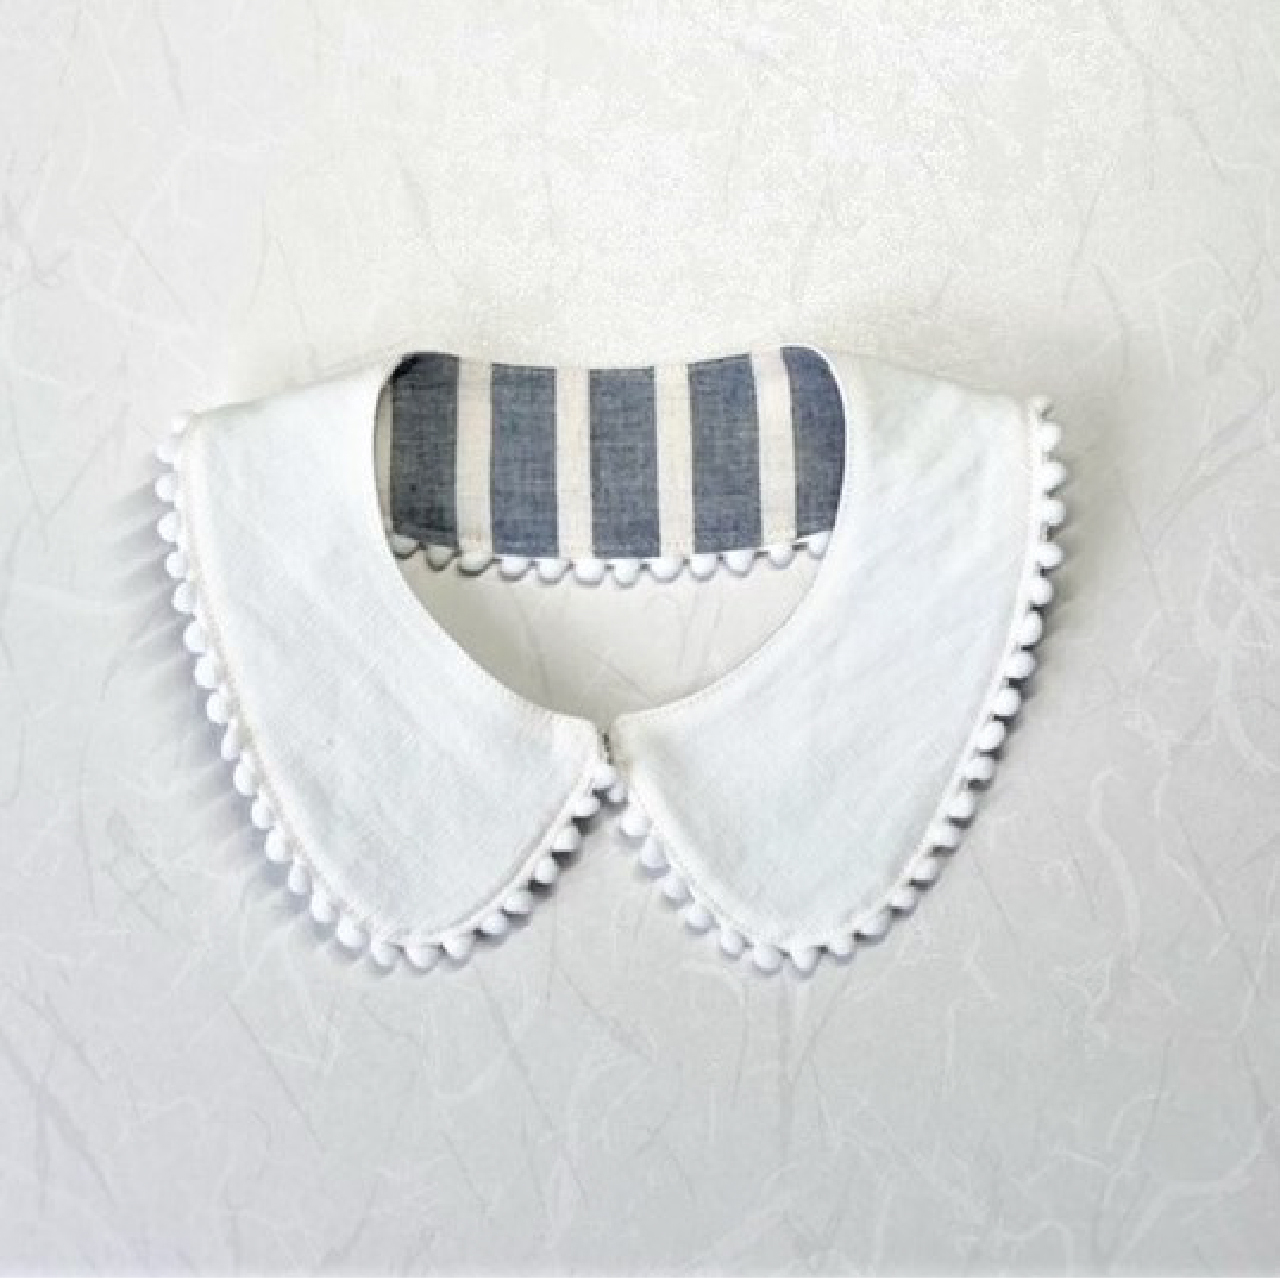 付けえり丸型ーキッズ用 型紙と作り方のセット Ac 03 子供服の型紙ショップ Tsukuro ツクロ